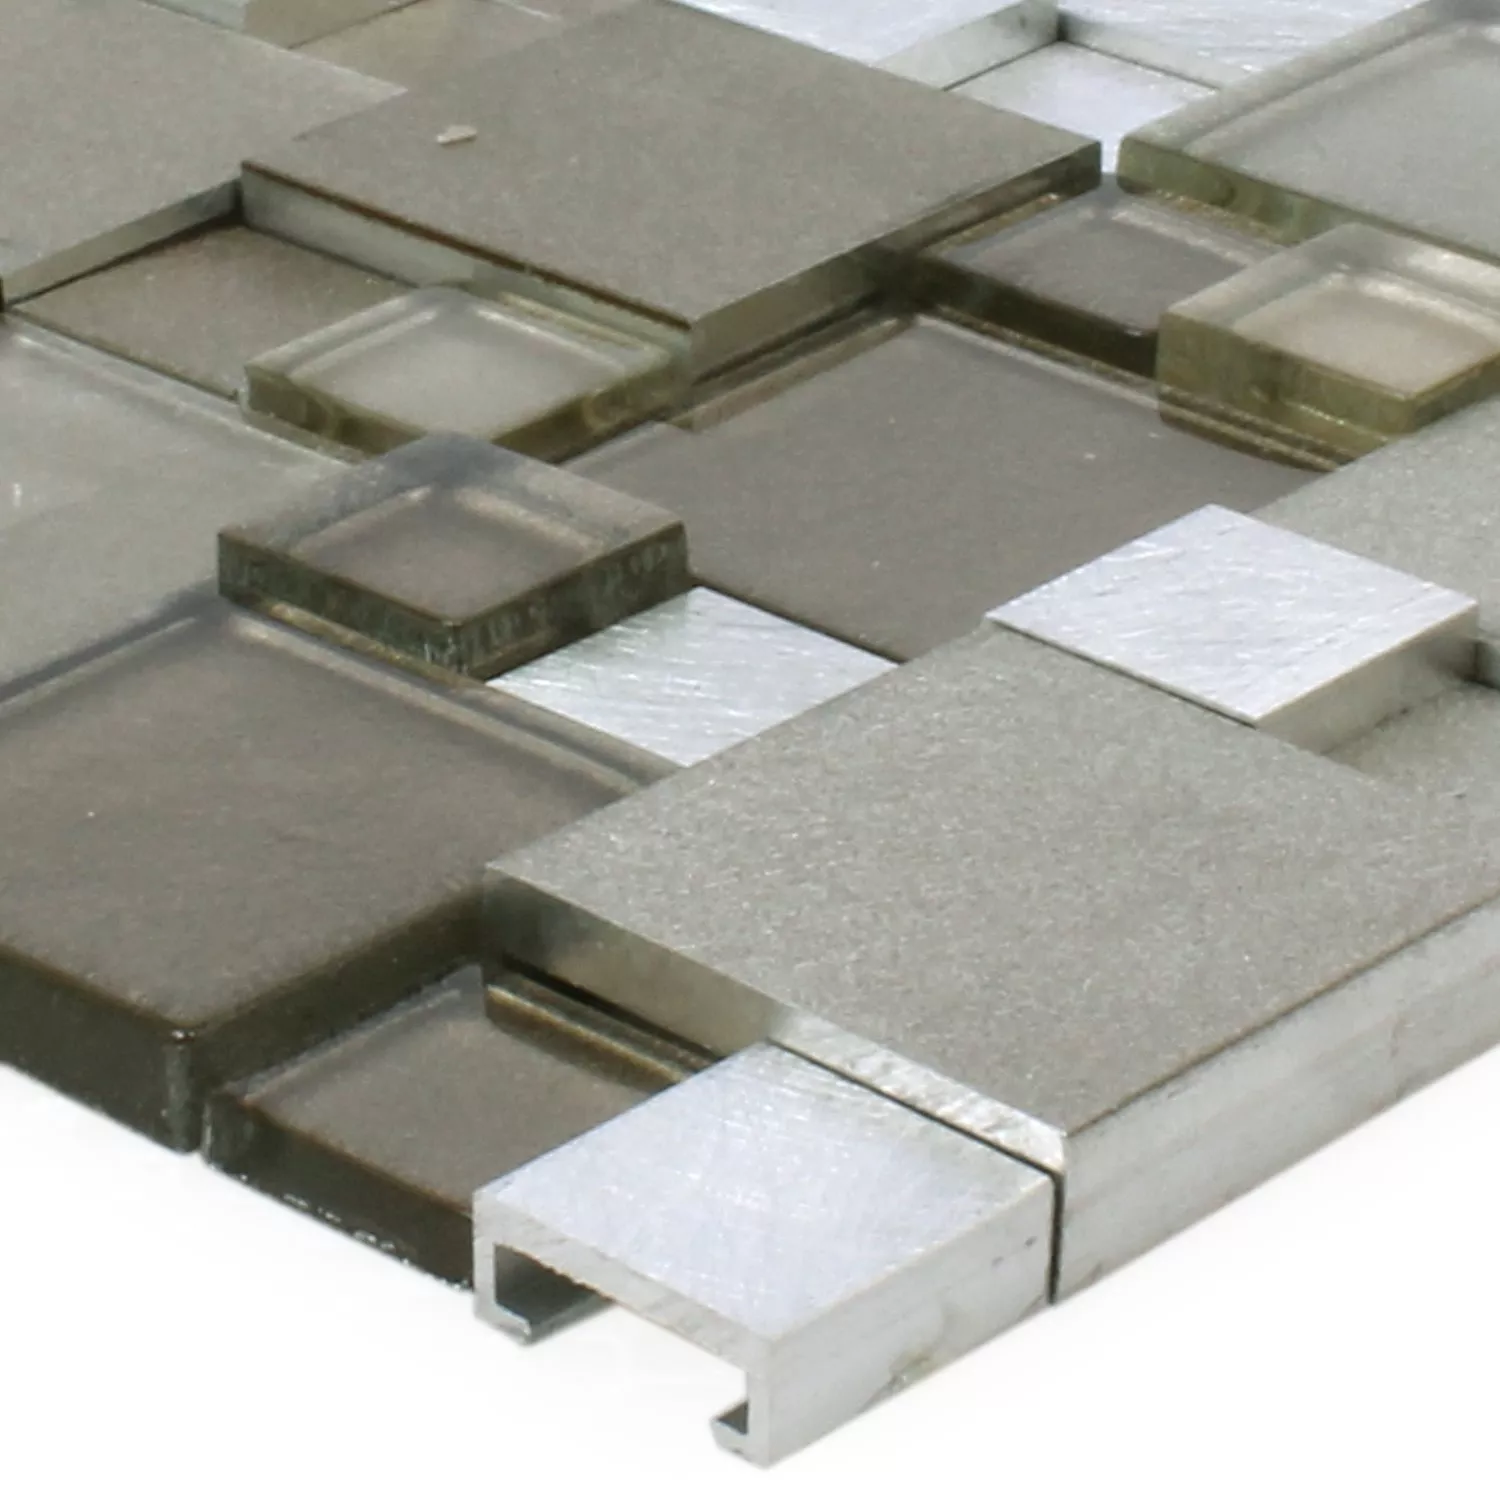 Sample Mosaic Tiles Glass Aluminum Condor 3D Brown Mix